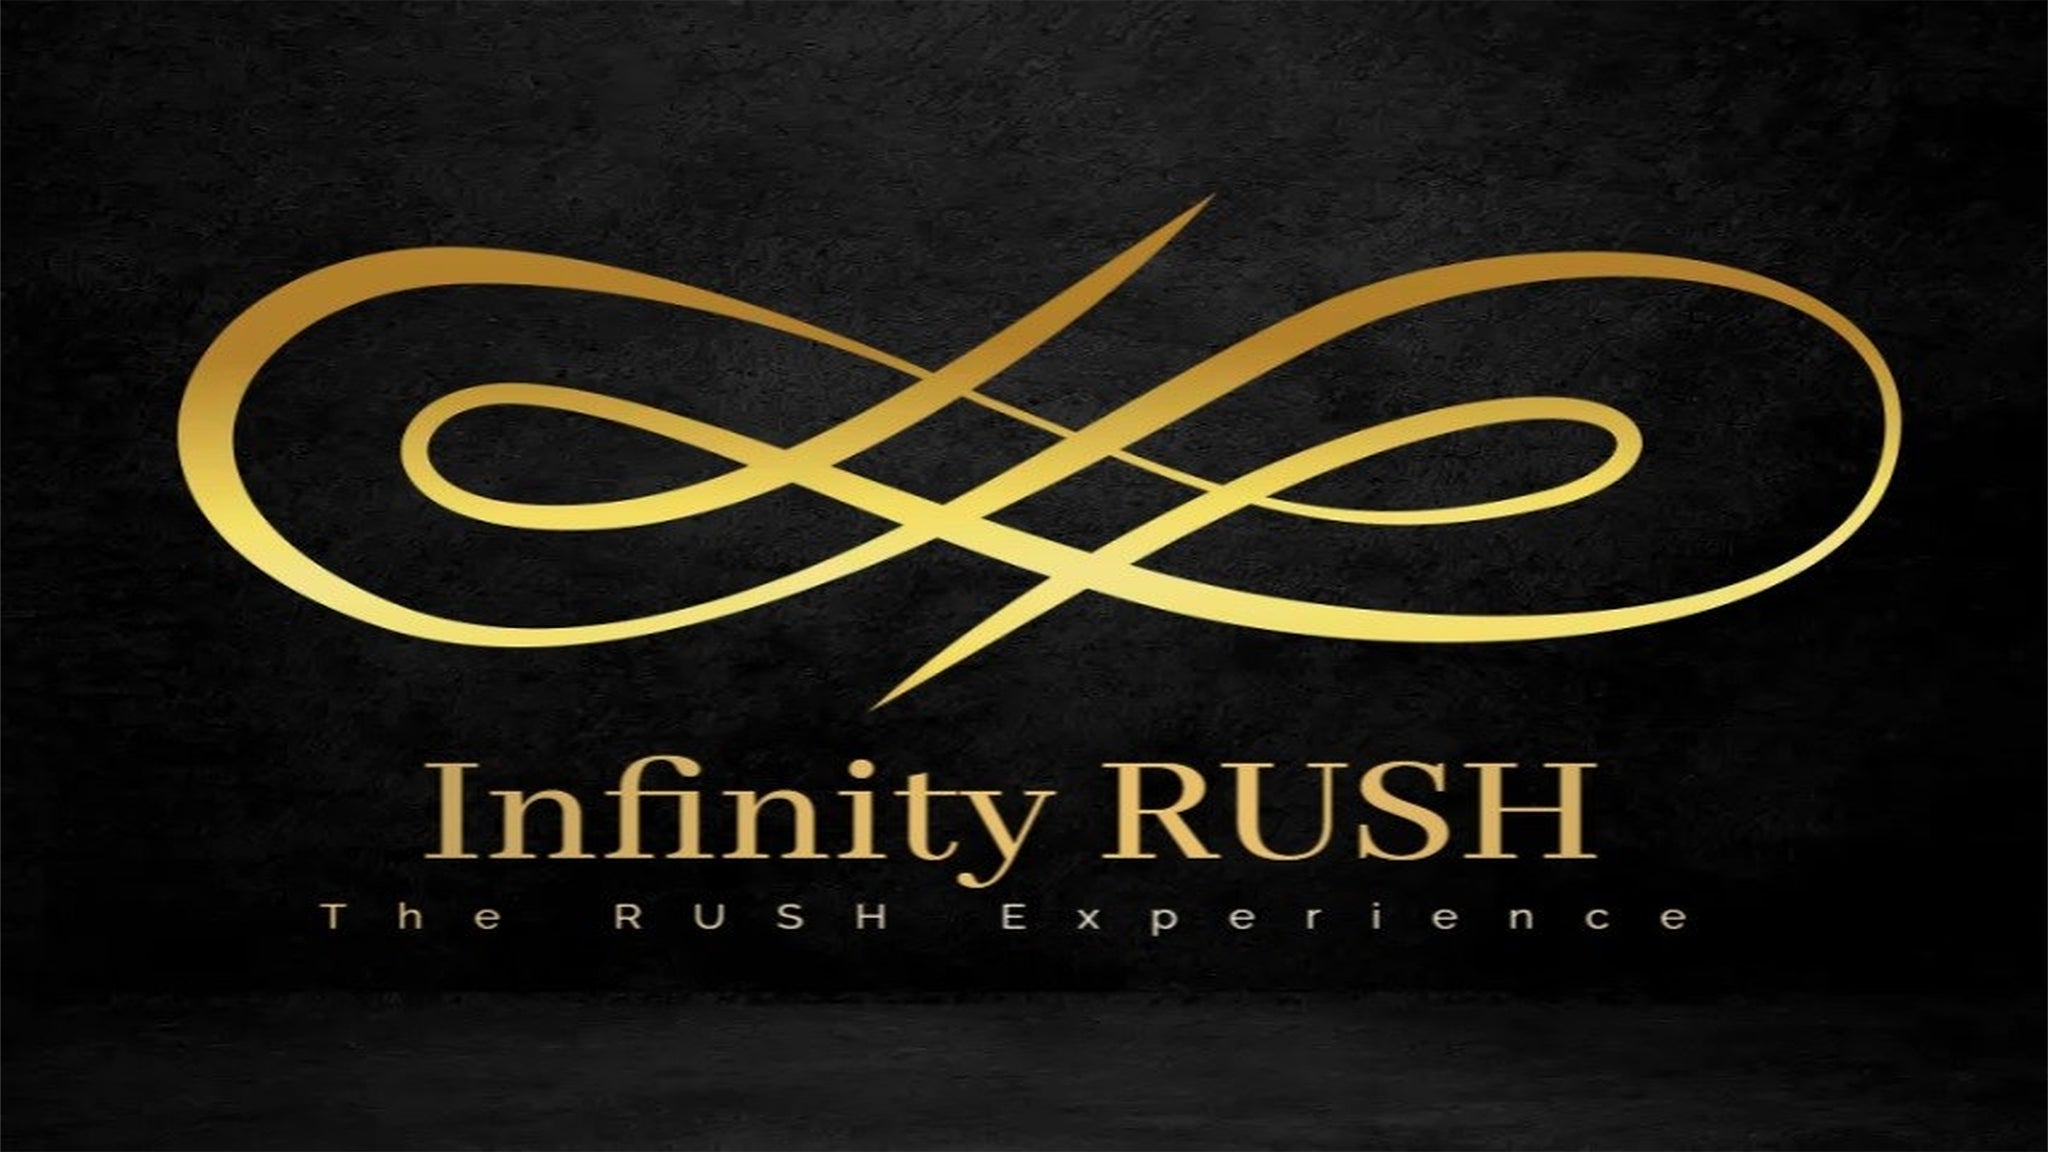 Infinity RUSH-The RUSH Experience